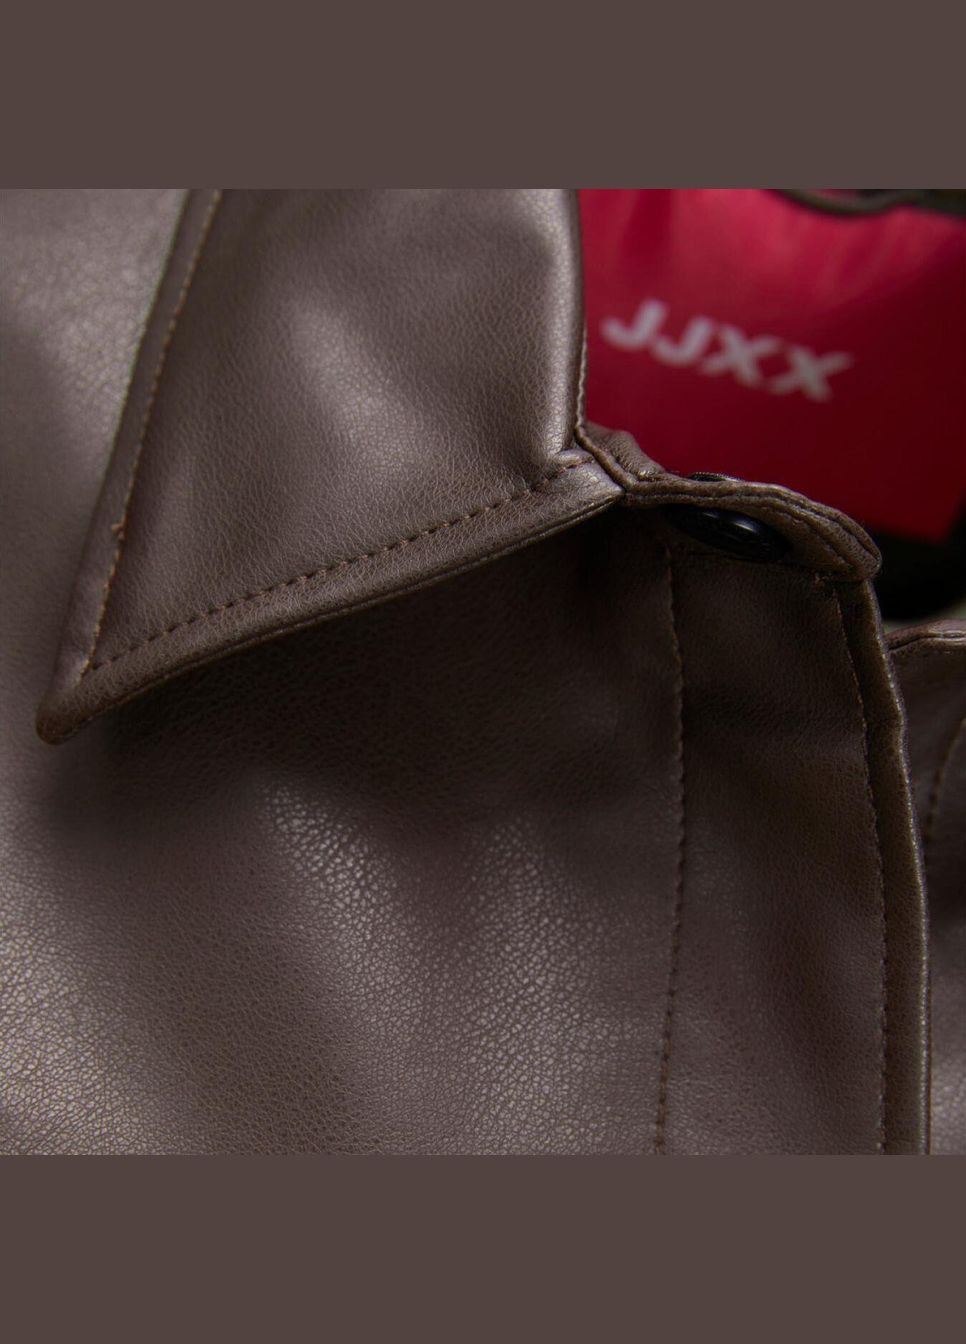 Коричневая куртка эко кожа,коричневый,jjxx Jack & Jones